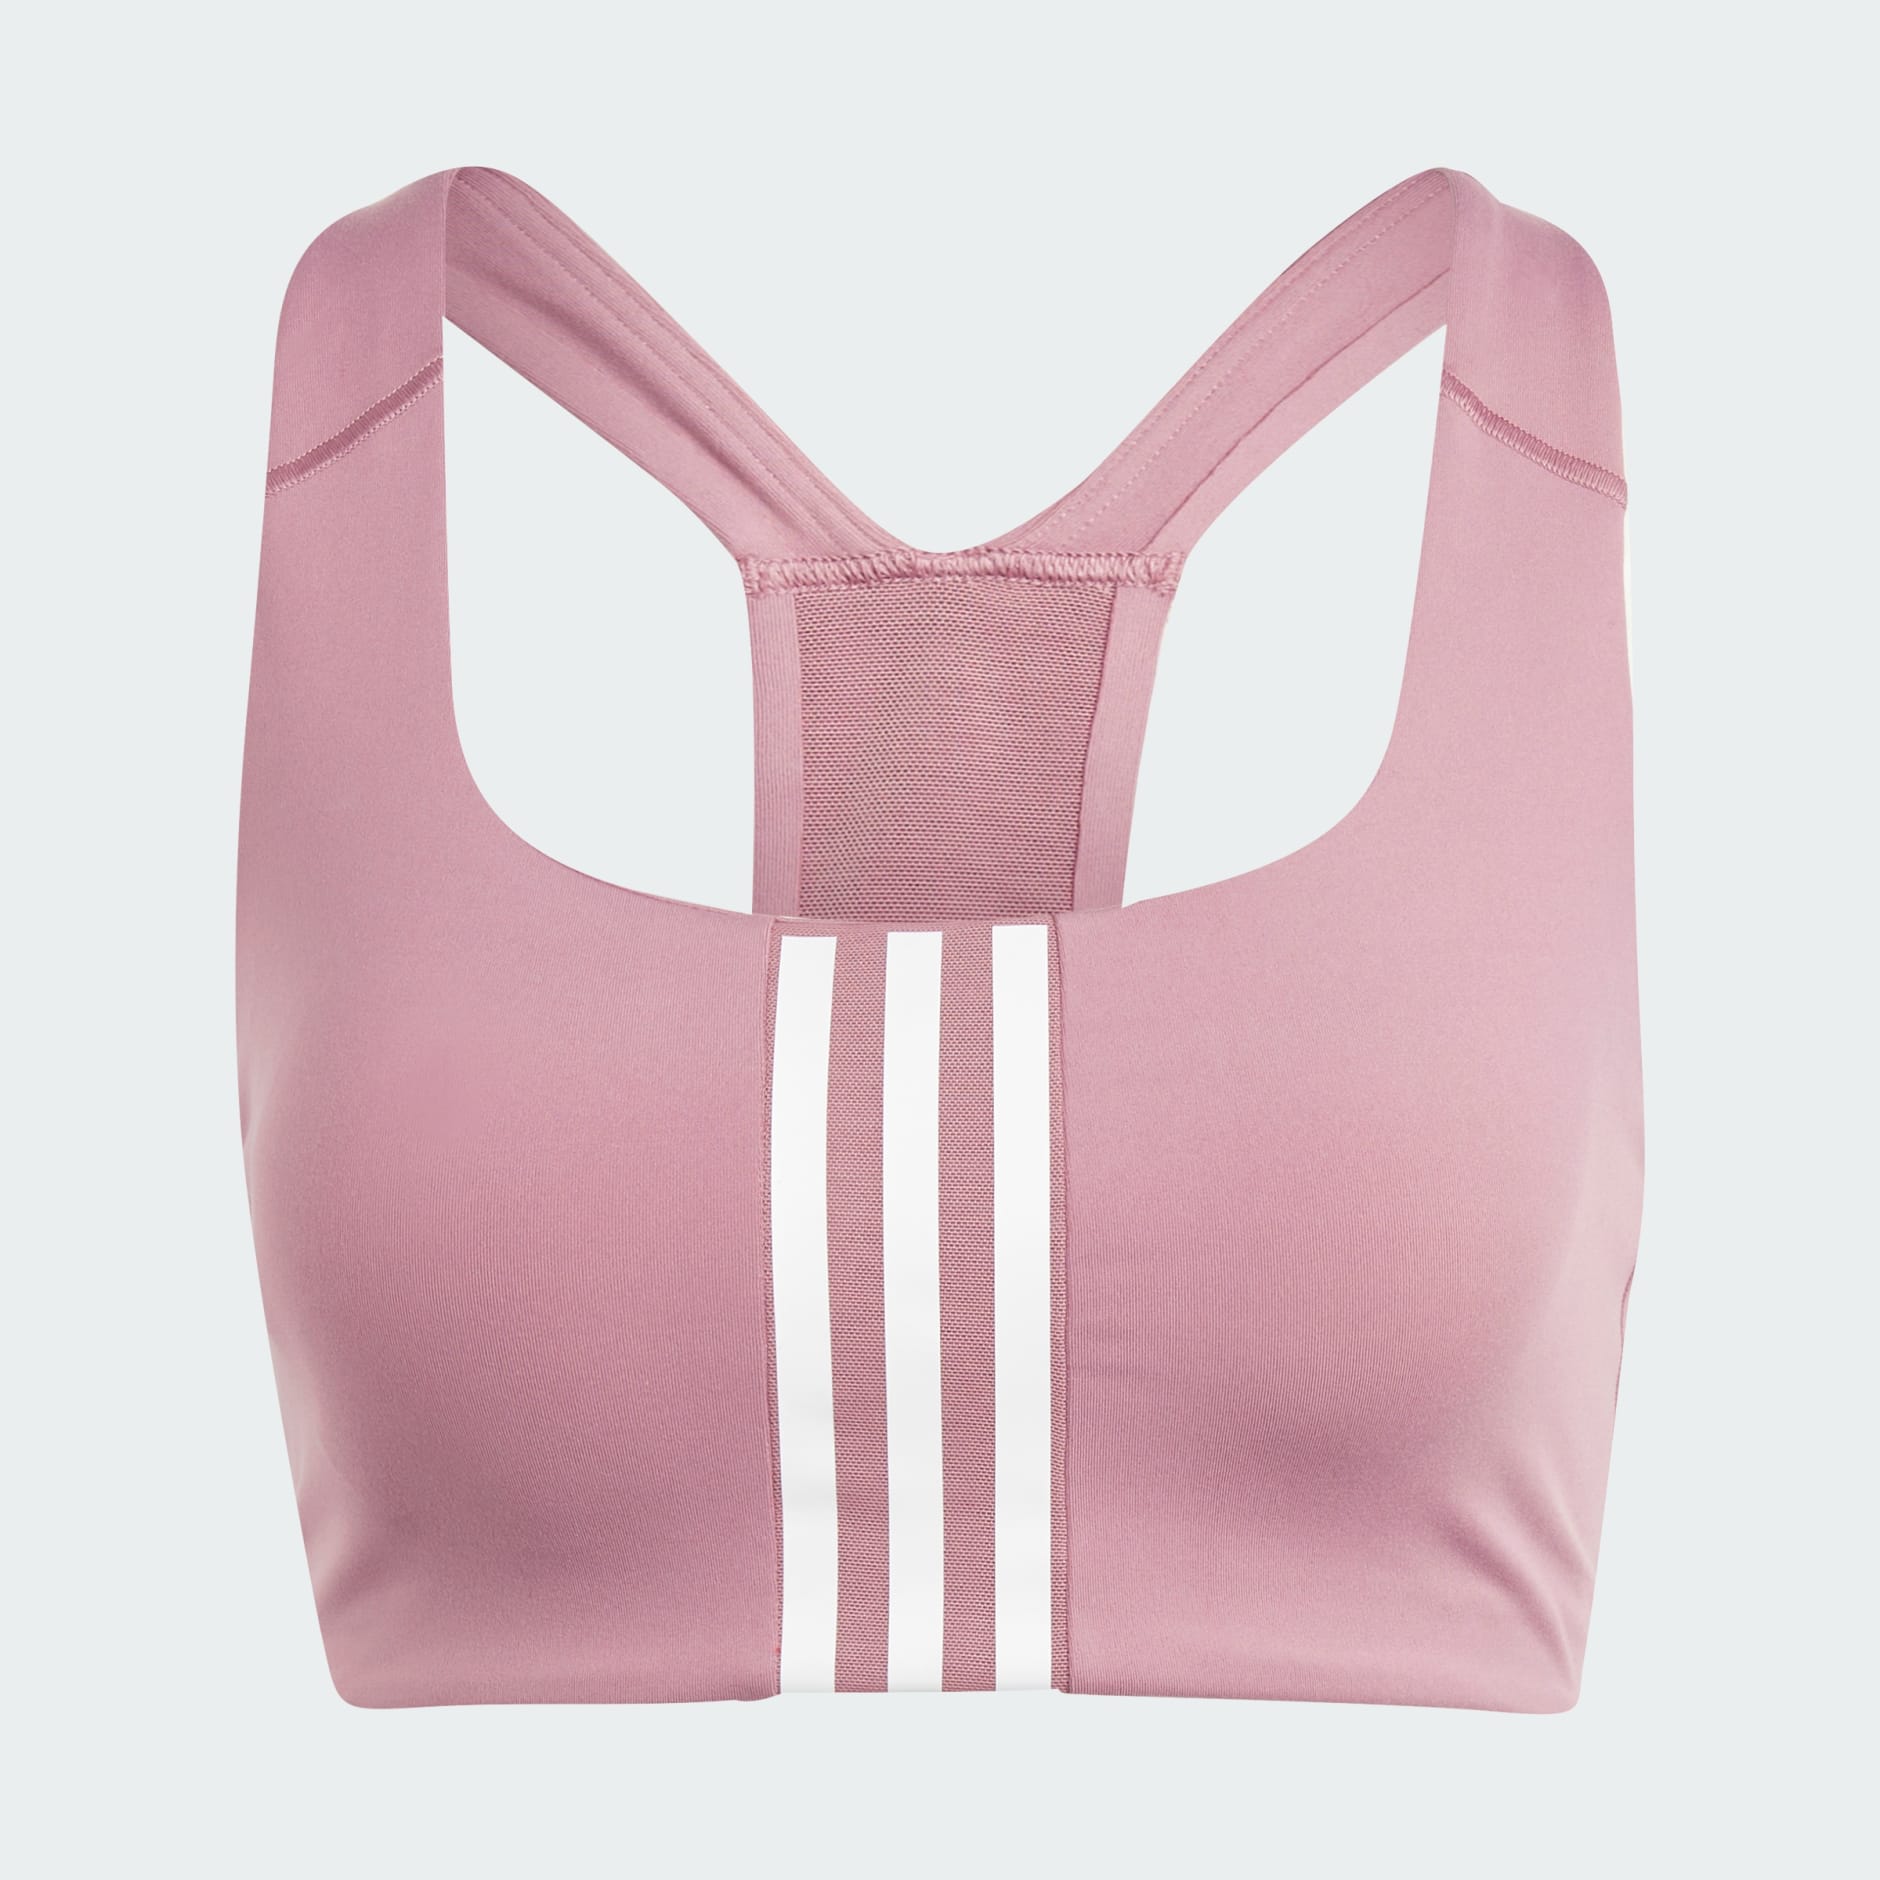 Neon pink sports bralette, Adidas